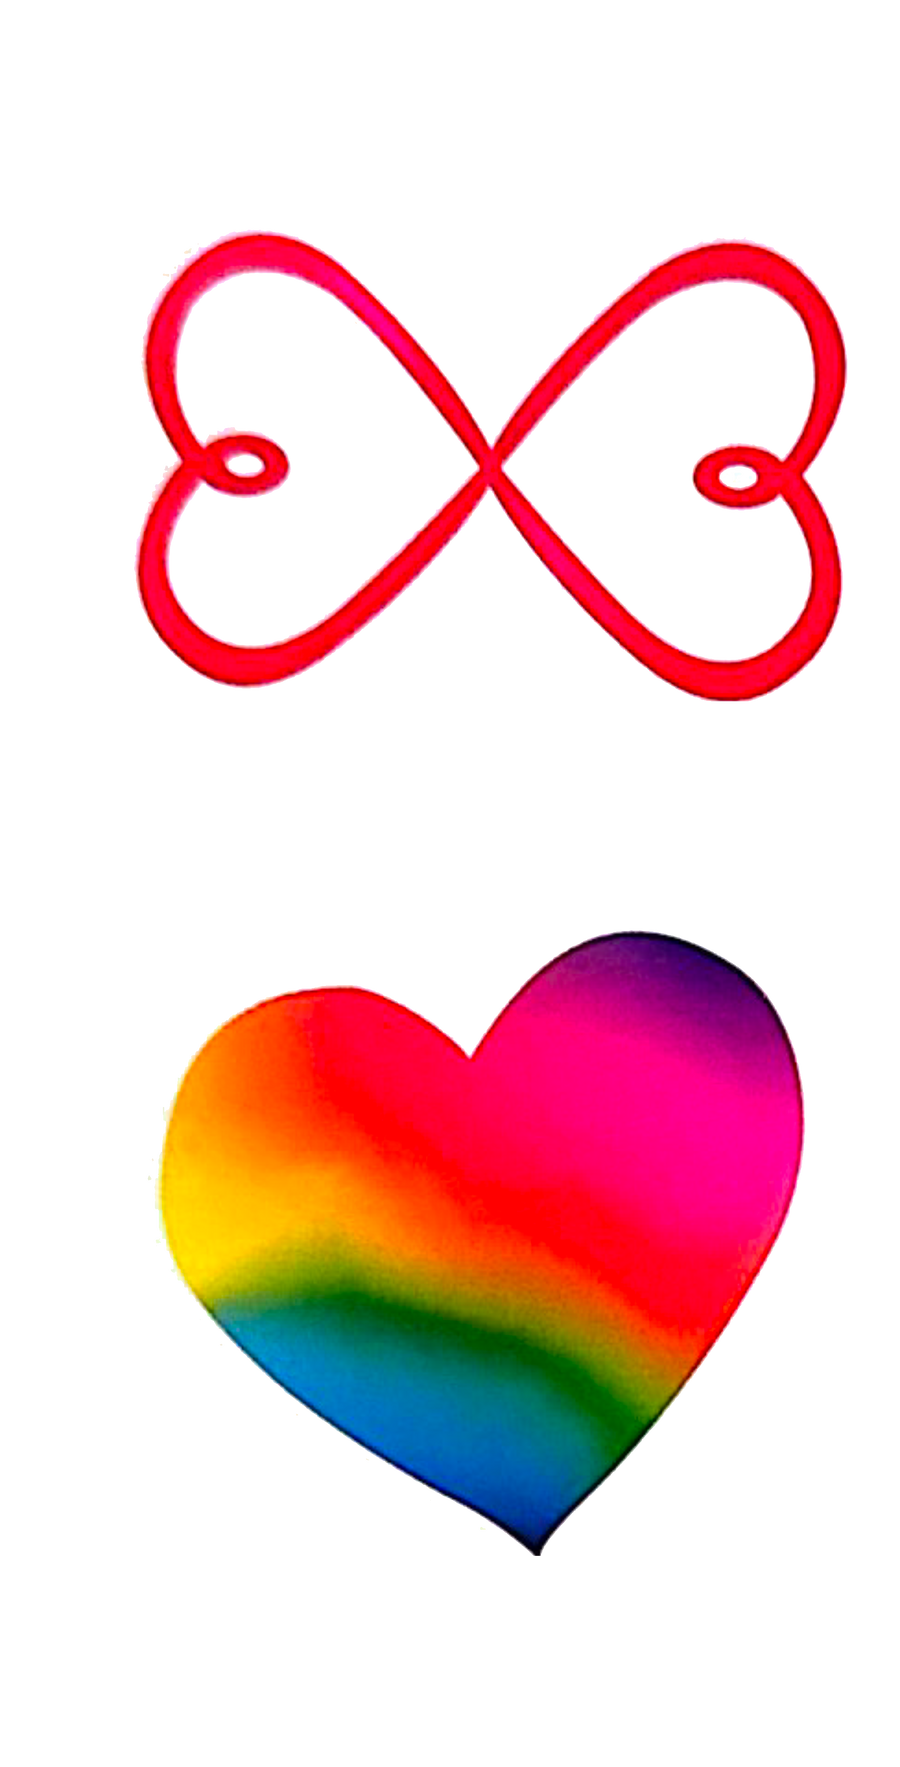 Rainbow Heart and Infinite Love